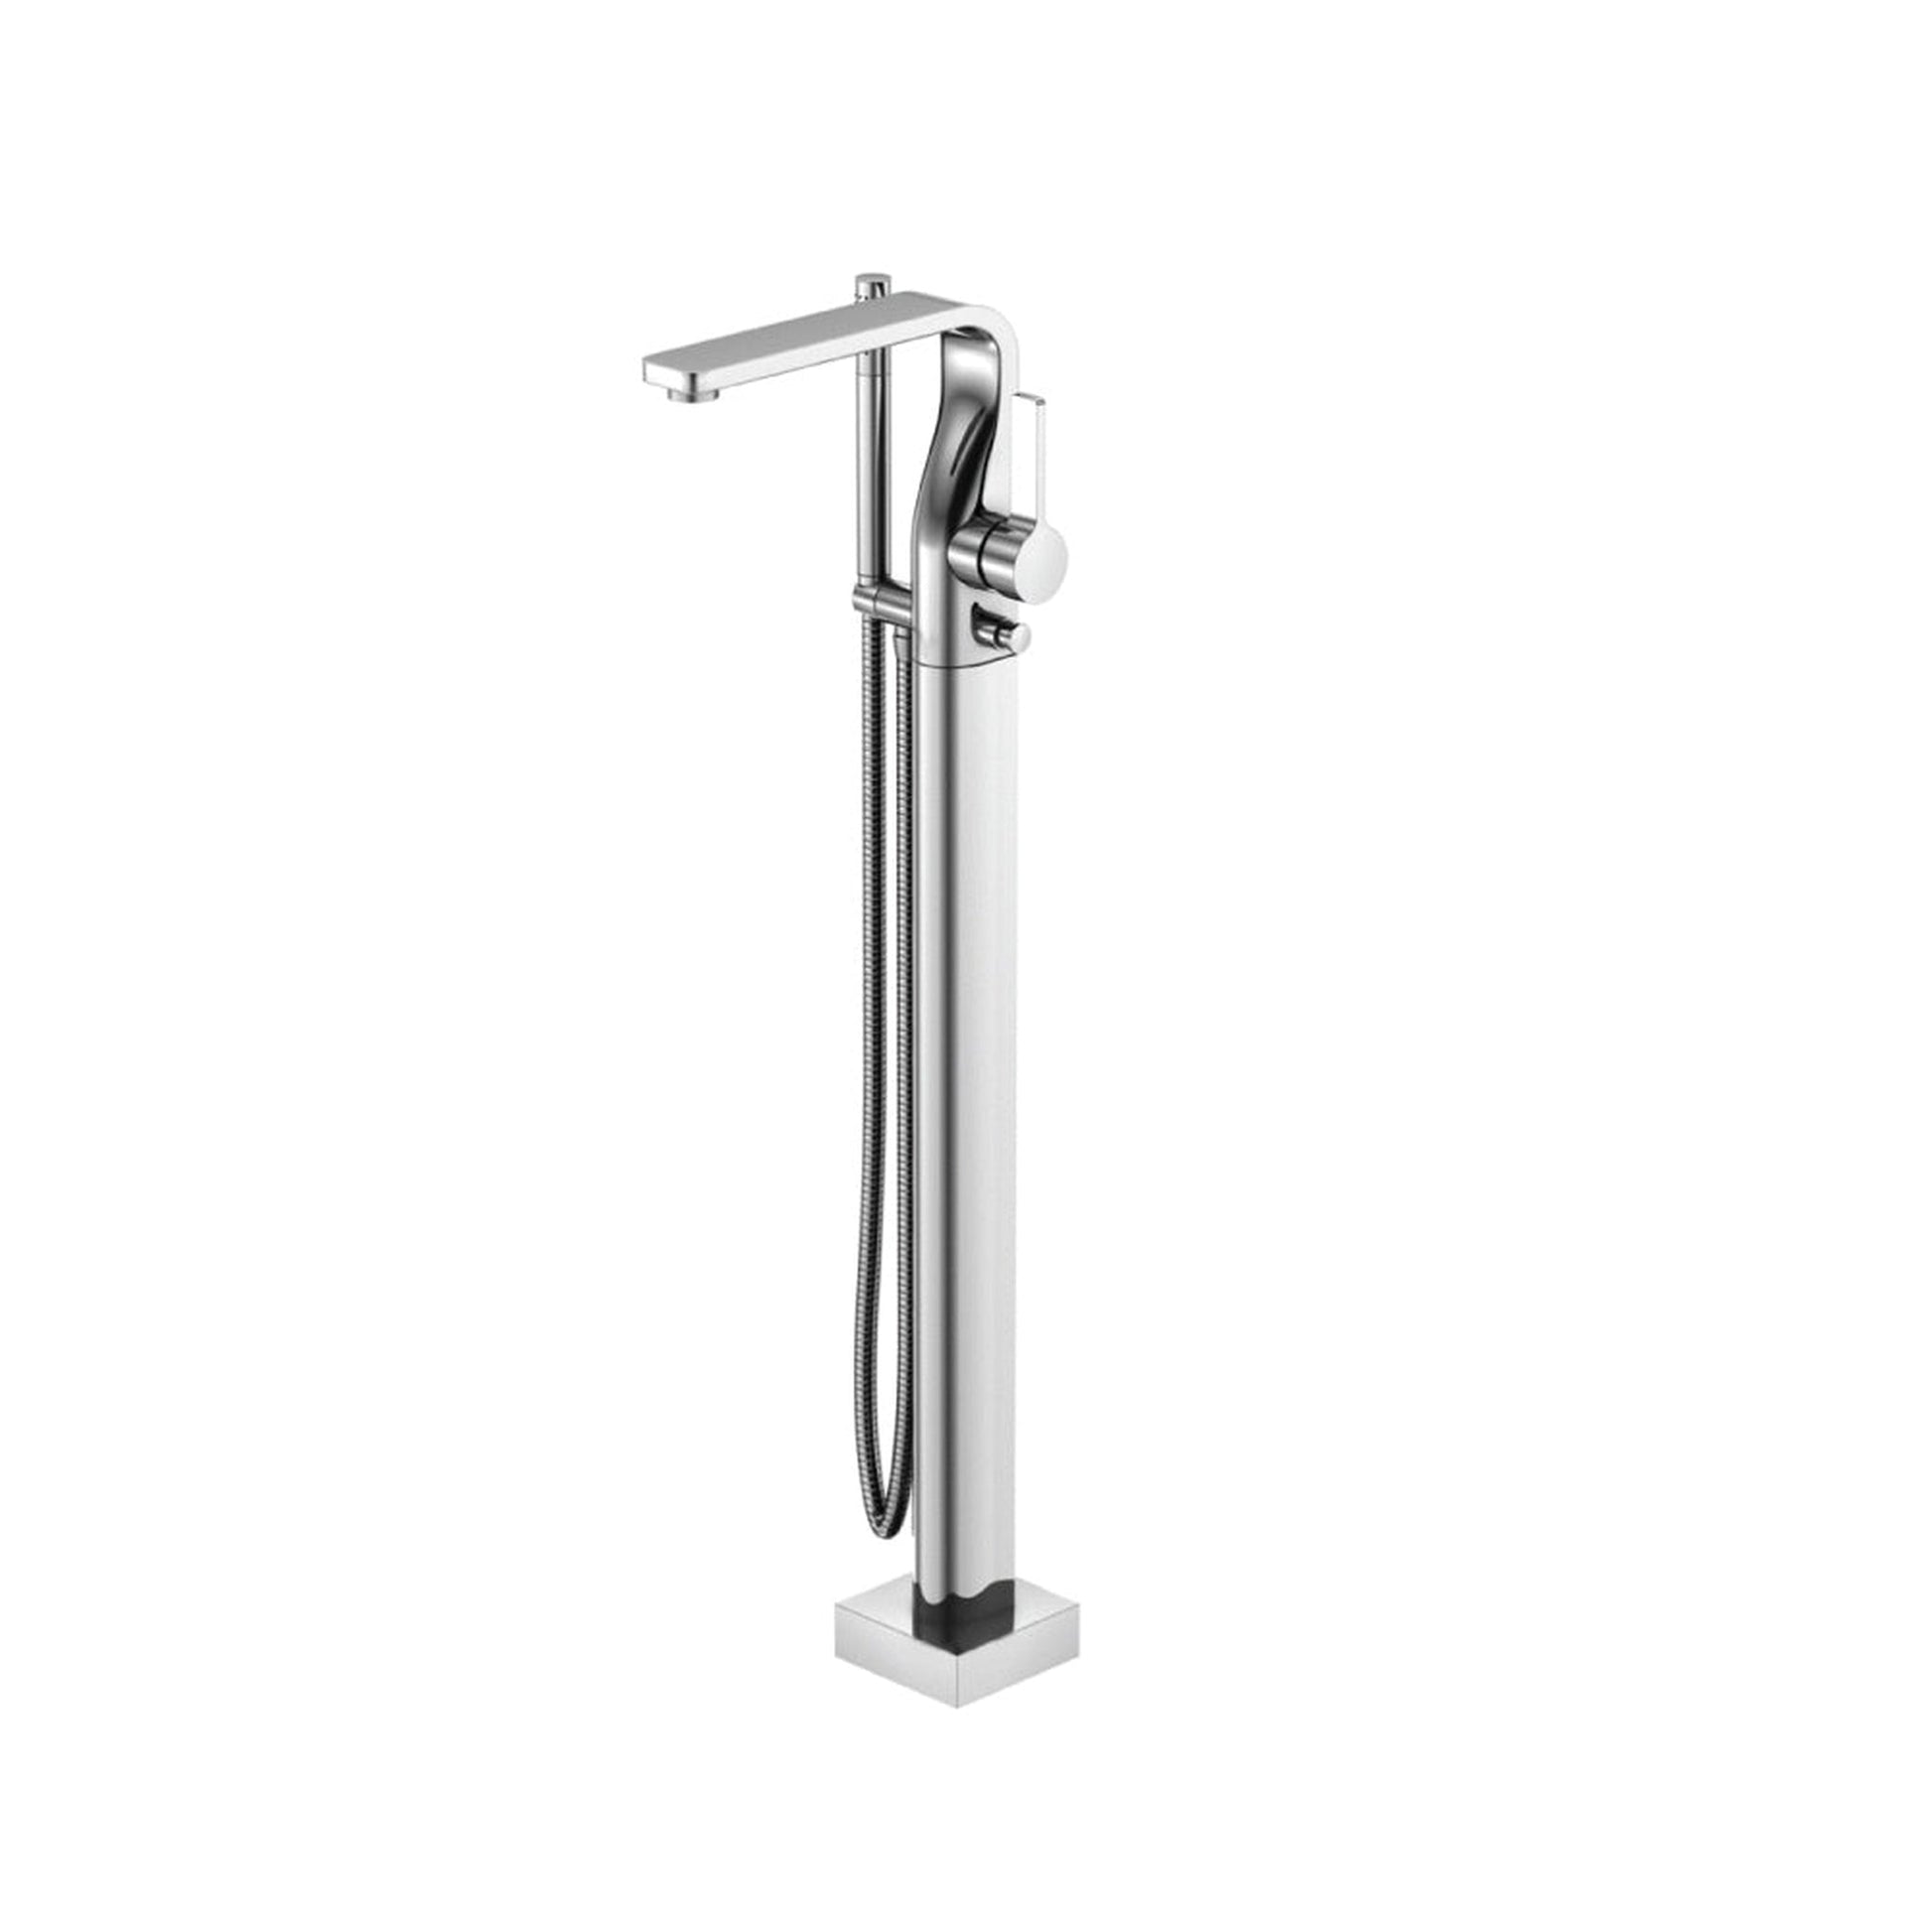 Isenberg Serie 260 Freestanding Floor Mount Bathtub / Tub Filler With Hand Shower in Chrome